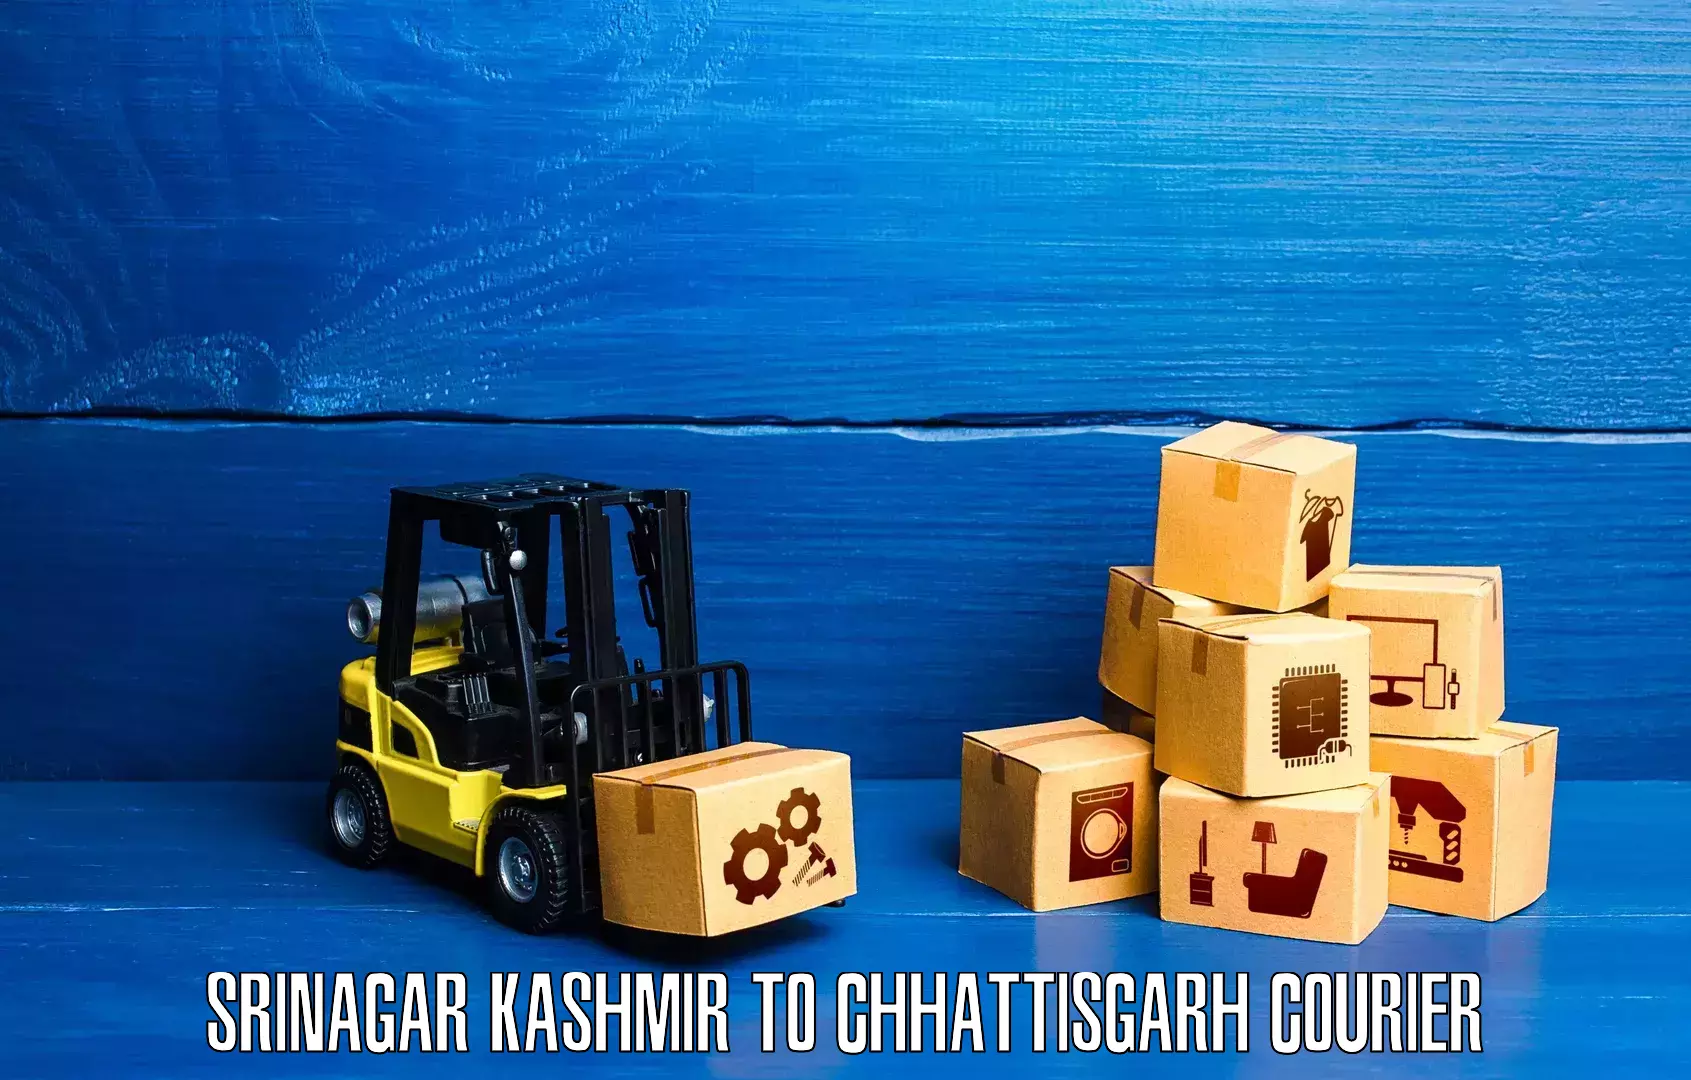 Multi-city courier Srinagar Kashmir to Shivrinarayan